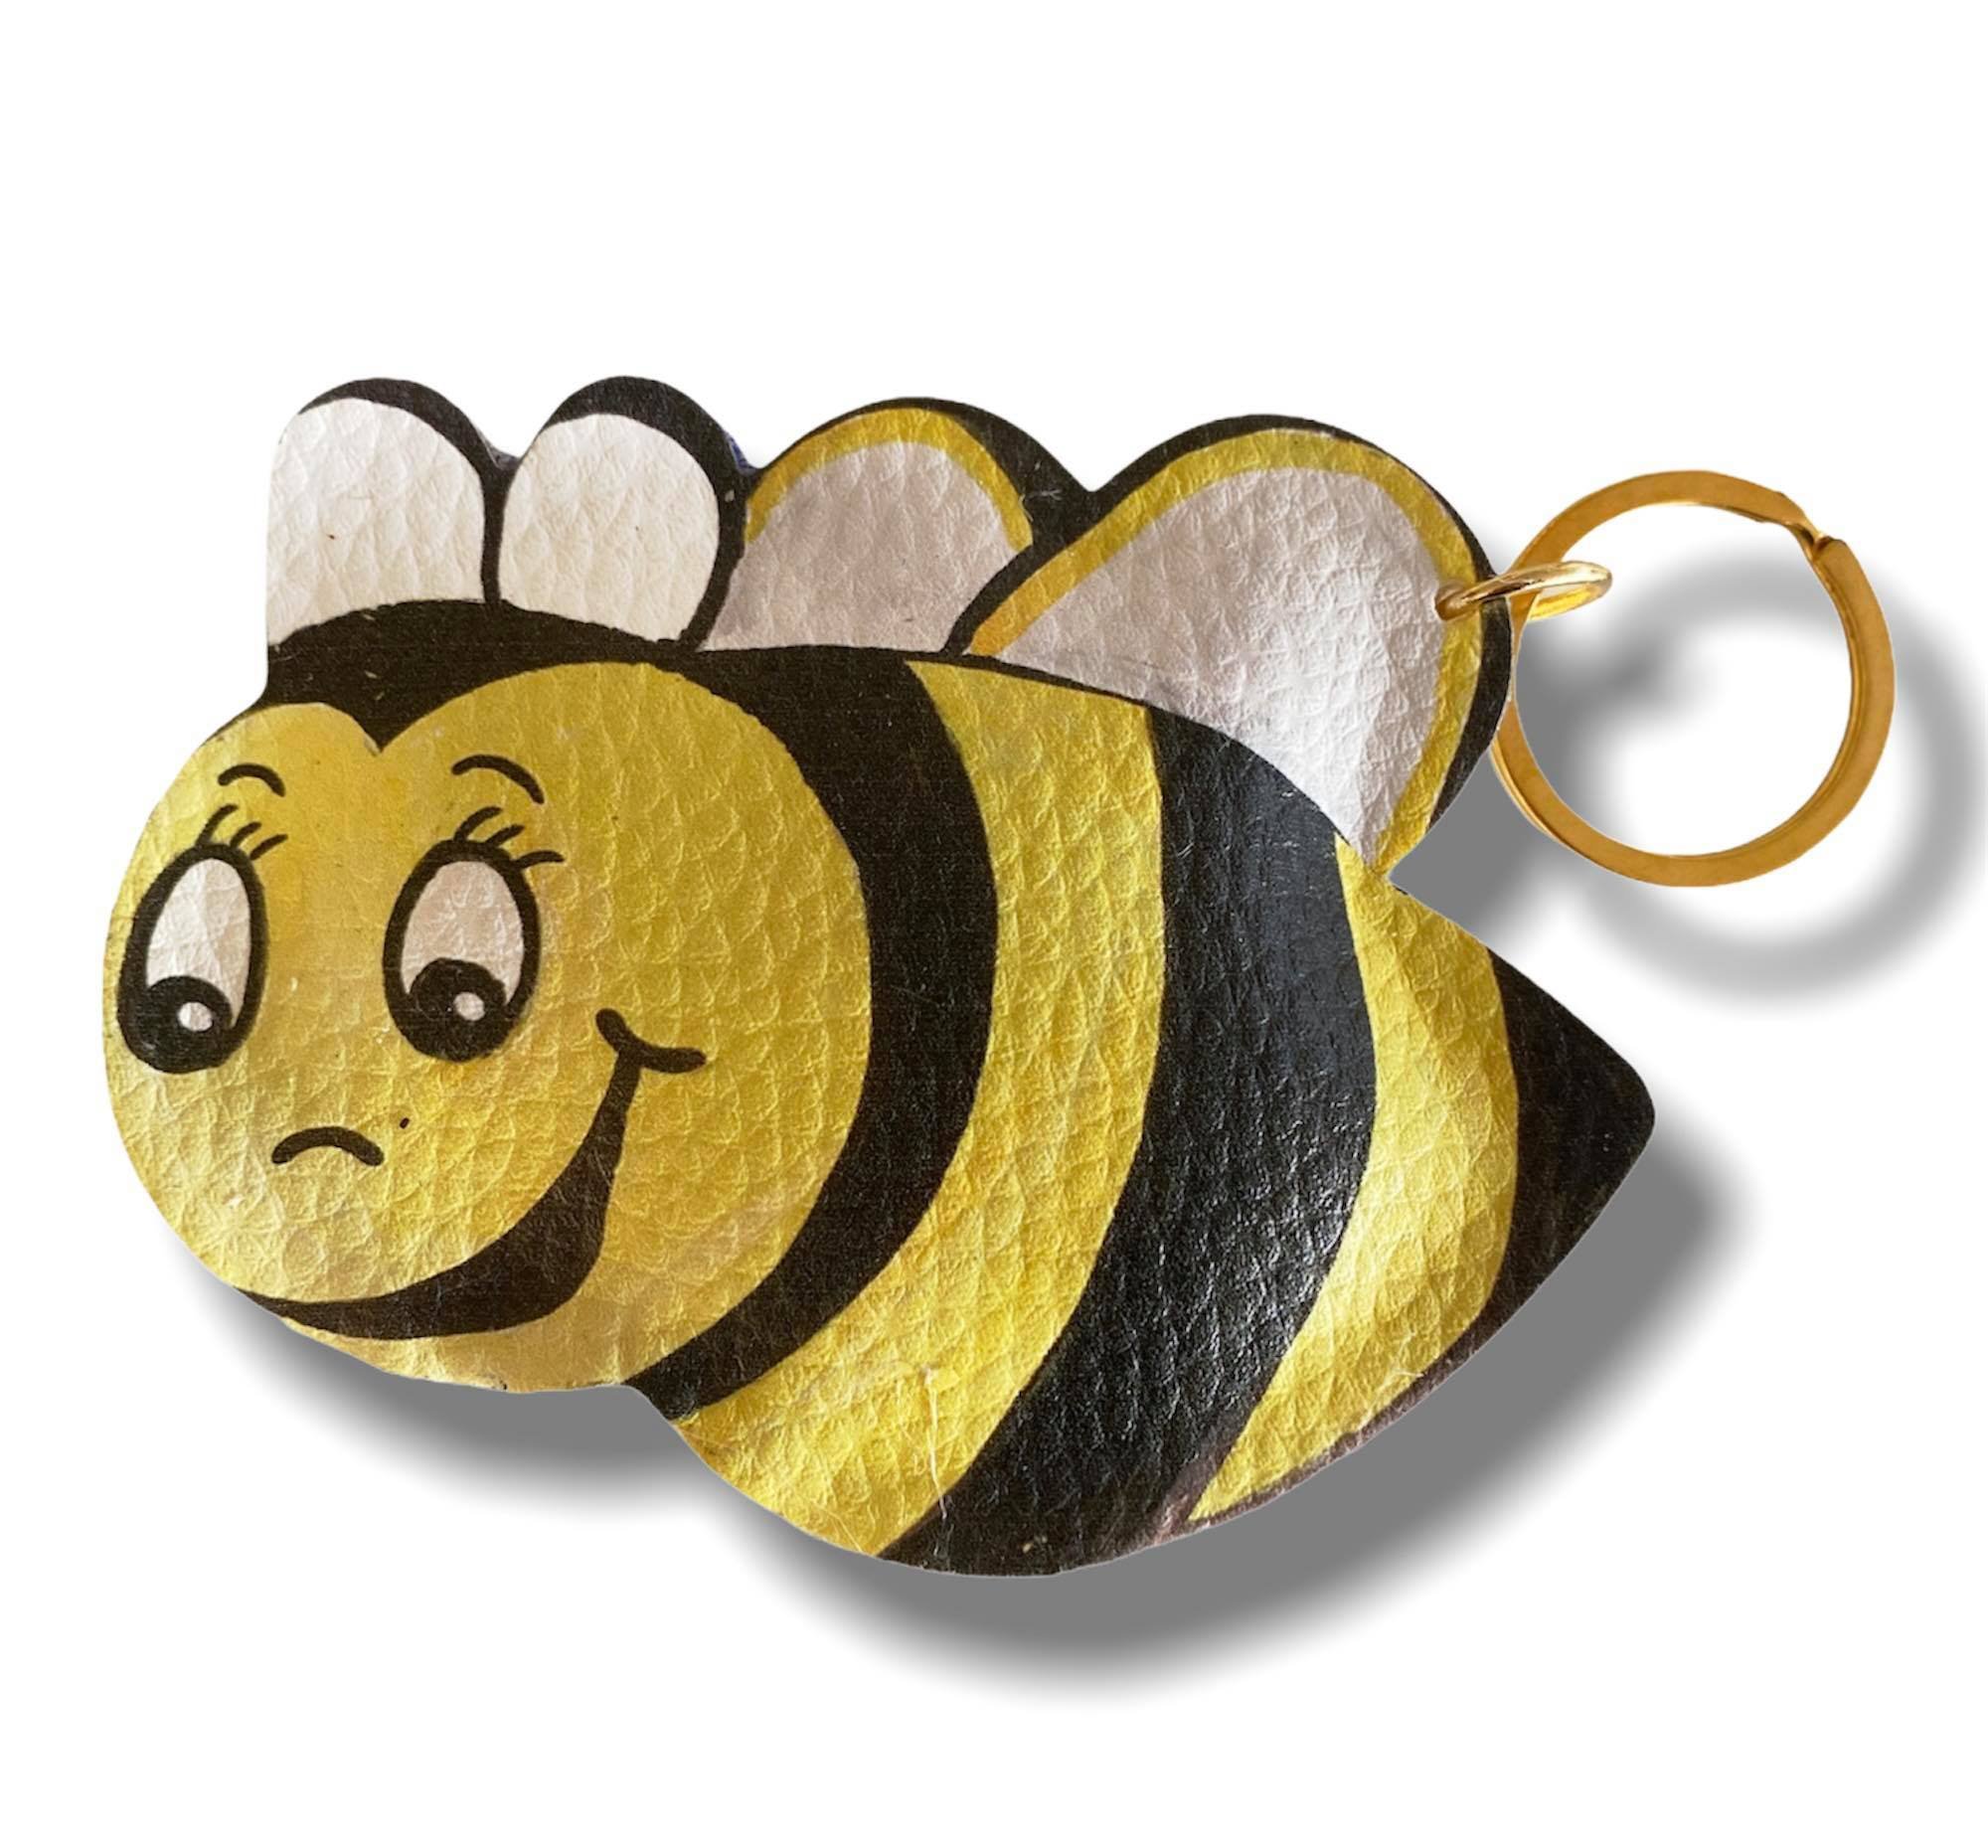 Bonbonniere bees